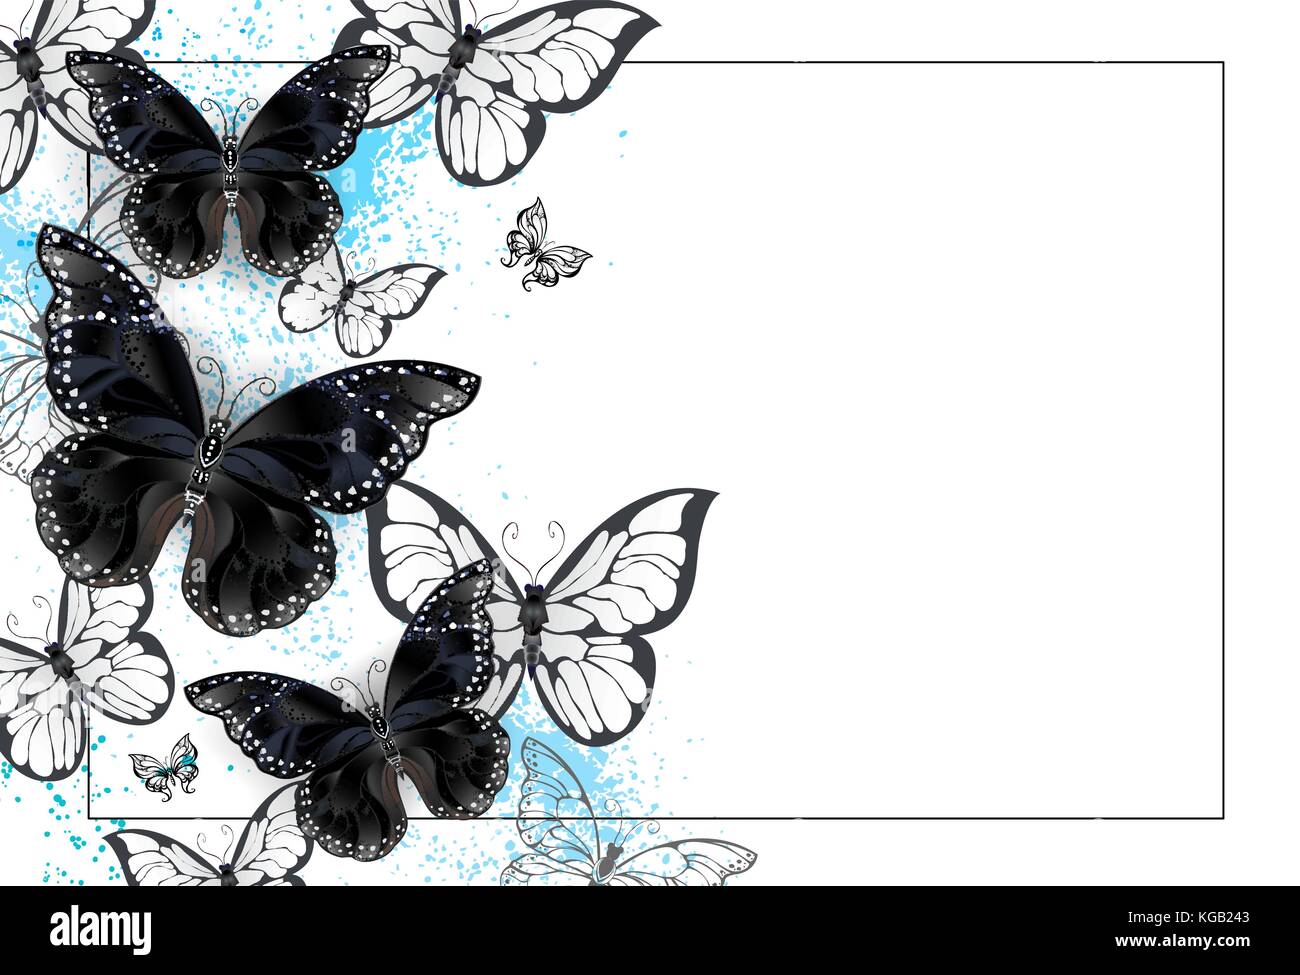 Fond blanc avec des papillons en noir et blanc sur un fond de peinture bleu blanc. design avec papillons. black butterfly. Illustration de Vecteur